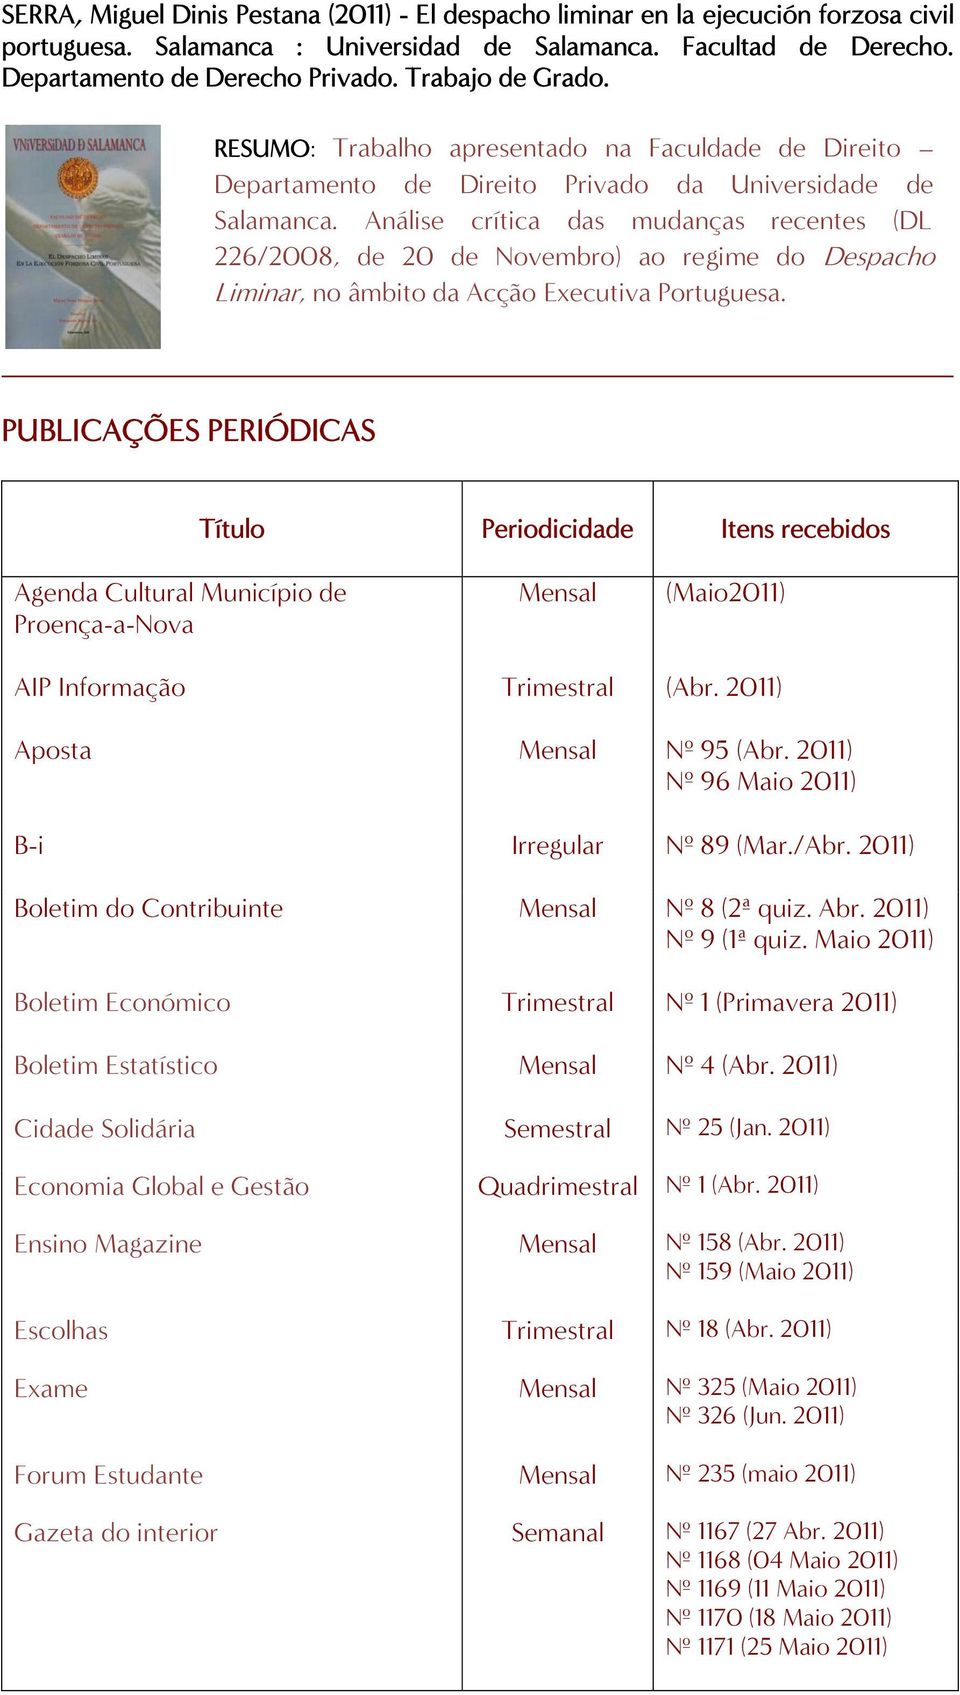 Análise crítica das mudanças recentes (DL 226/2008, de 20 de Novembro) ao regime do Despacho Liminar, no âmbito da Acção Executiva Portuguesa.